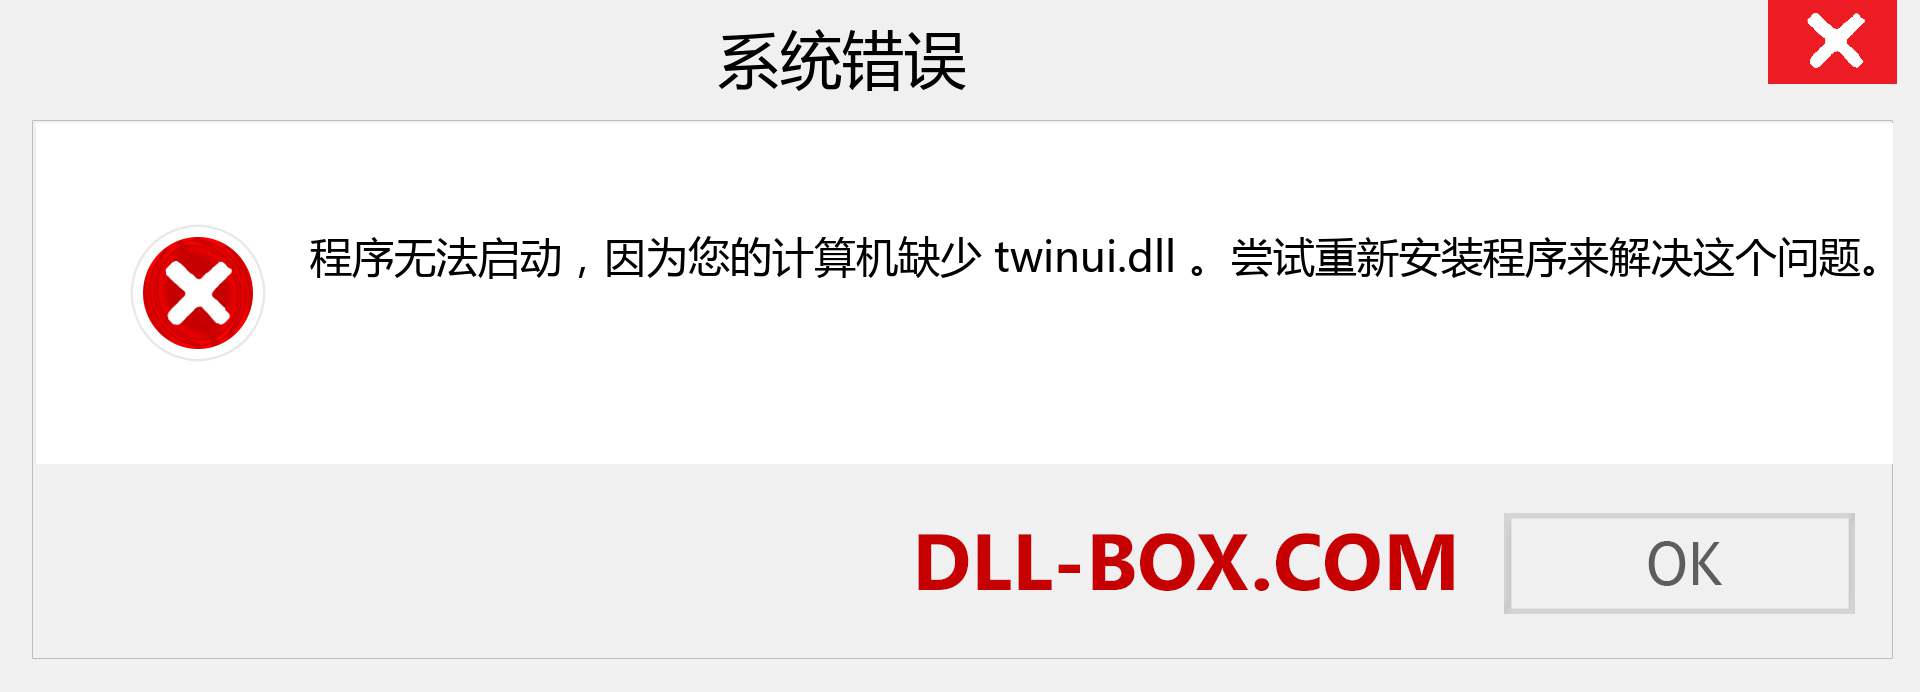 twinui.dll 文件丢失？。 适用于 Windows 7、8、10 的下载 - 修复 Windows、照片、图像上的 twinui dll 丢失错误